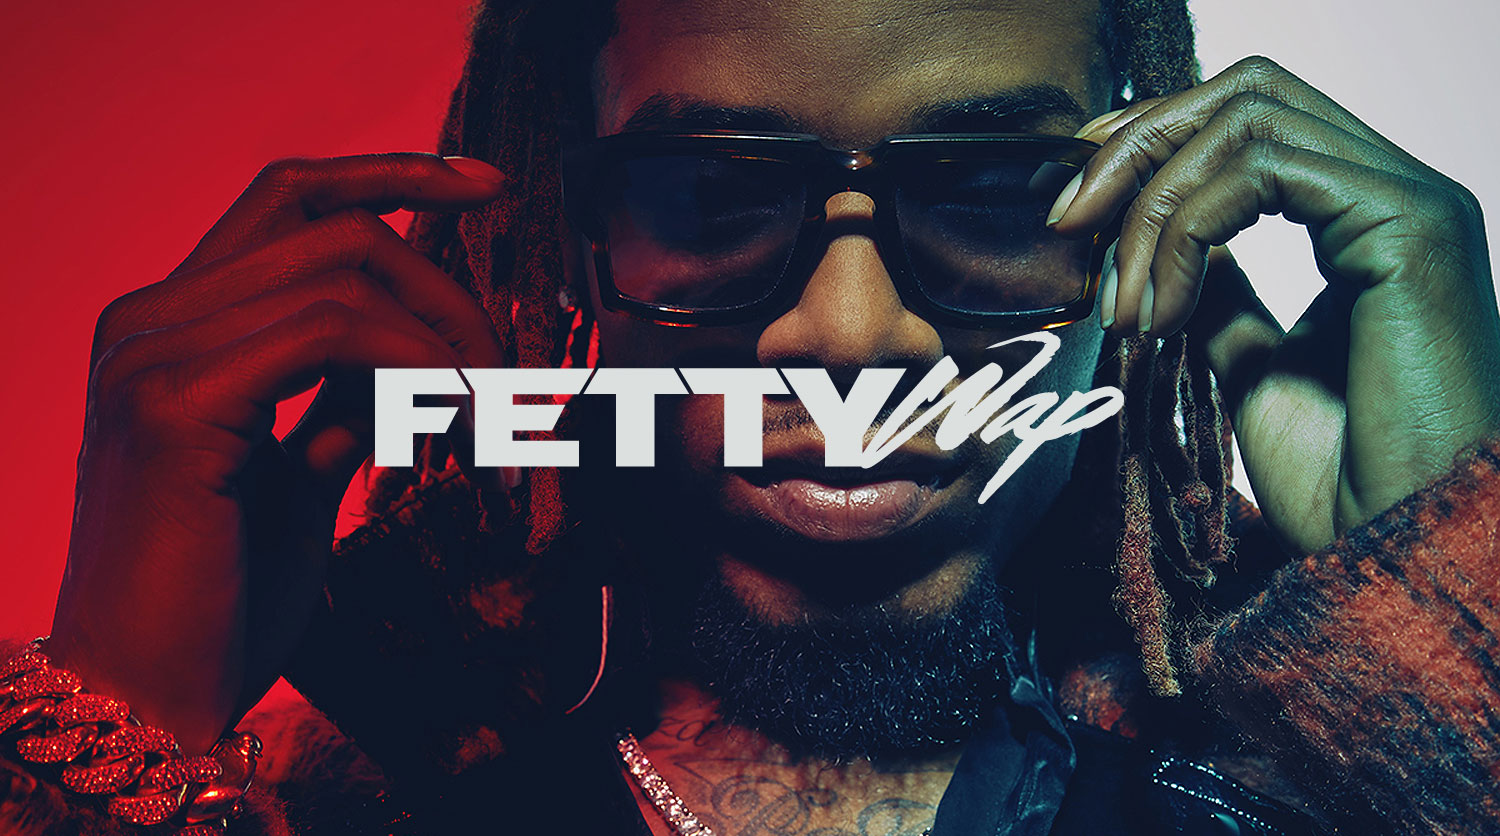 Fetty-Wap-My-Way-feat.-Monty-Official-Video - Fetty Wap